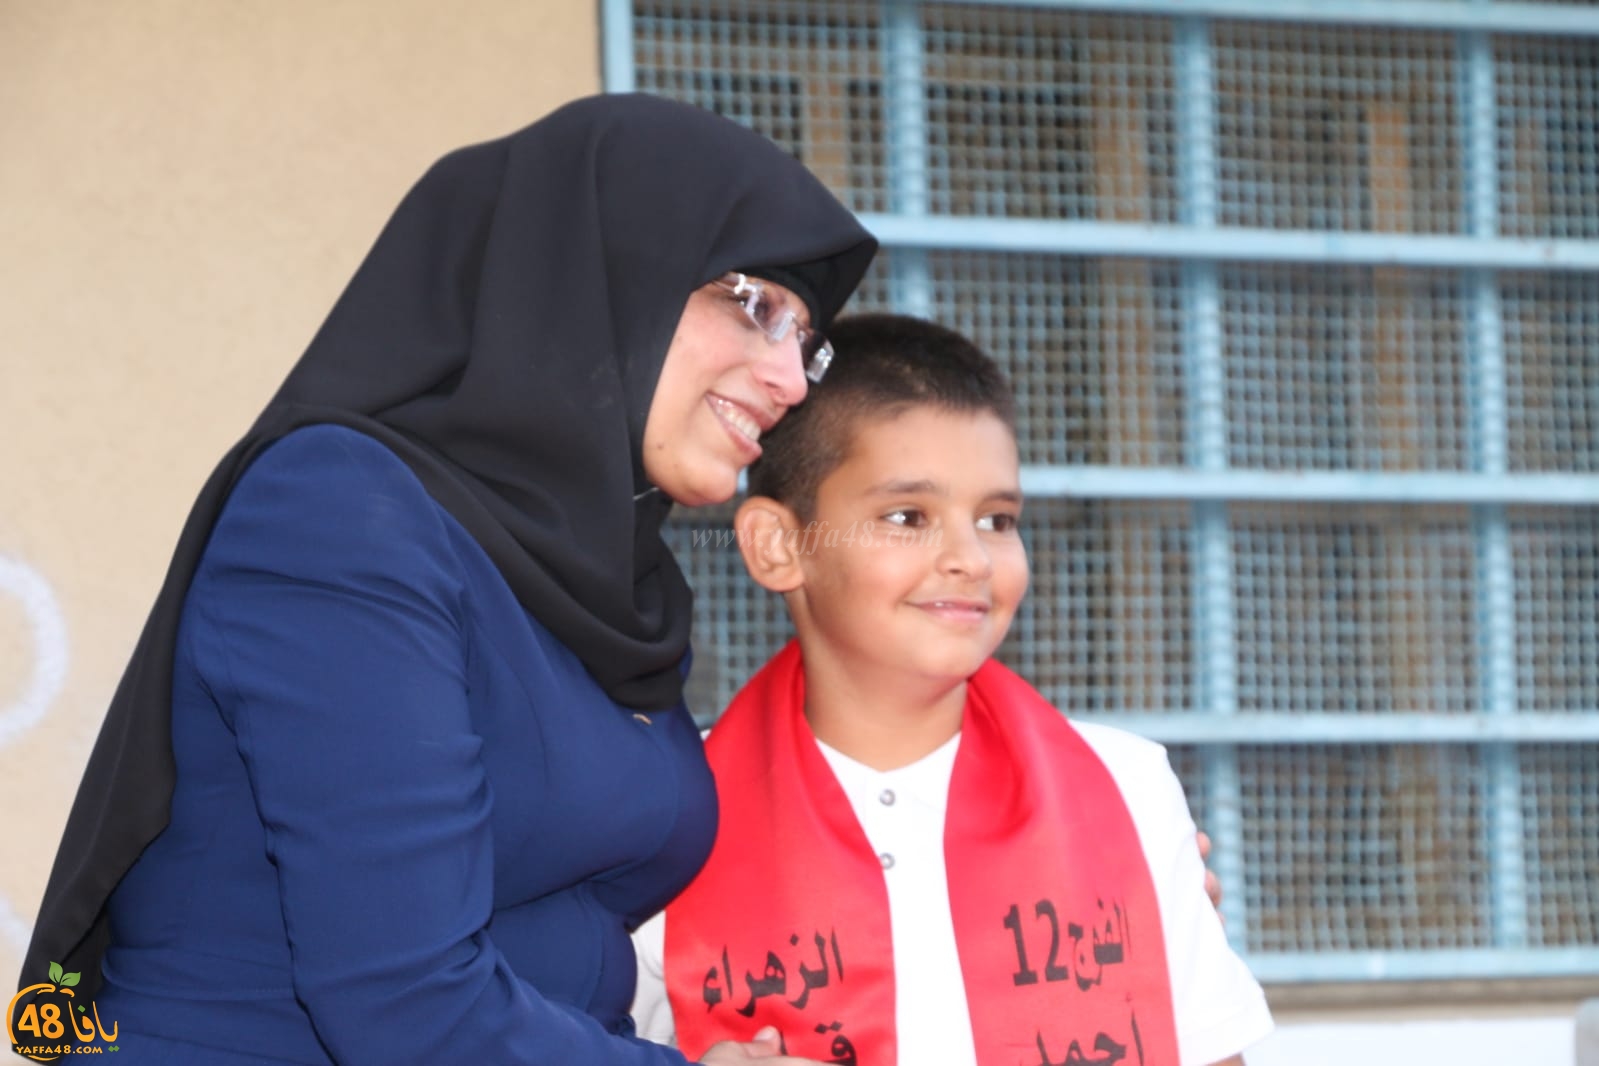 بالصور: مدرسة الزهراء الابتدائية في يافا تحتفل بتخريج طلابها ضمن الفوج الـ12 